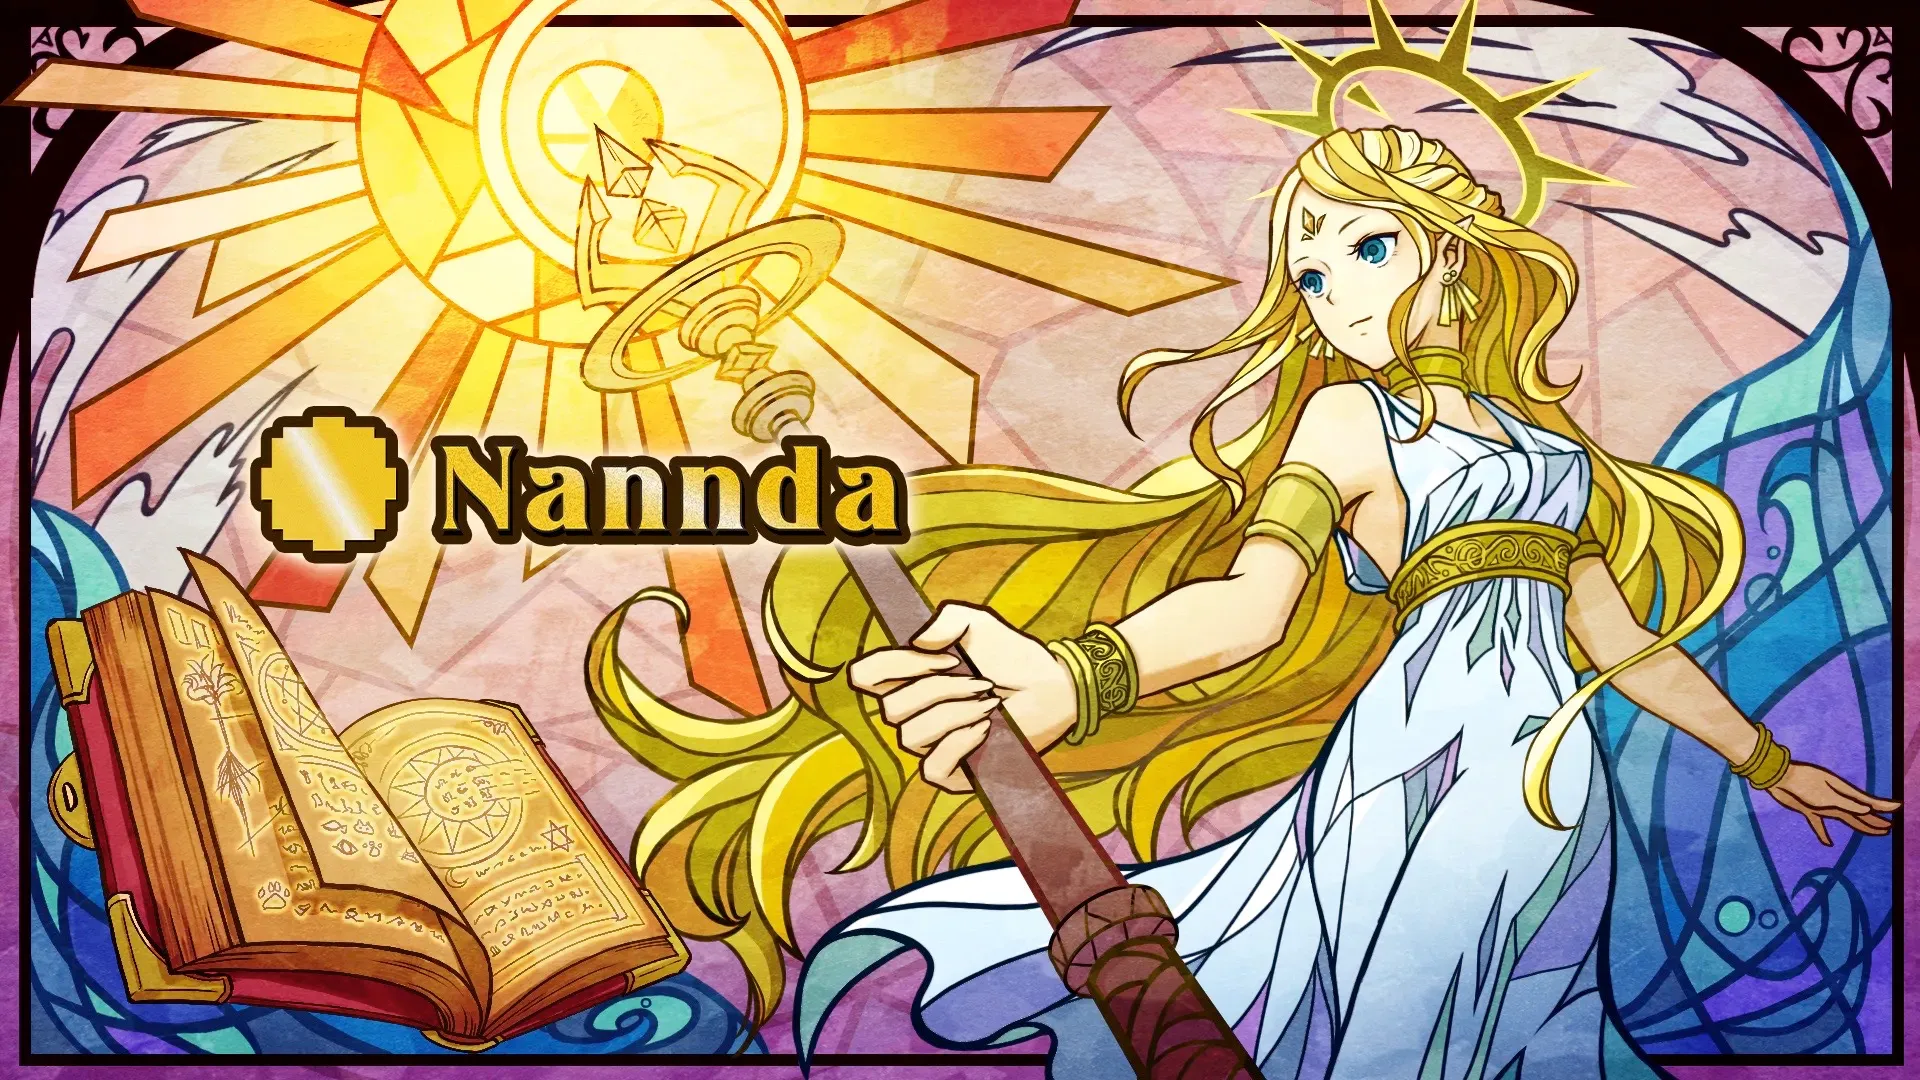 Nannda（ナンダ）